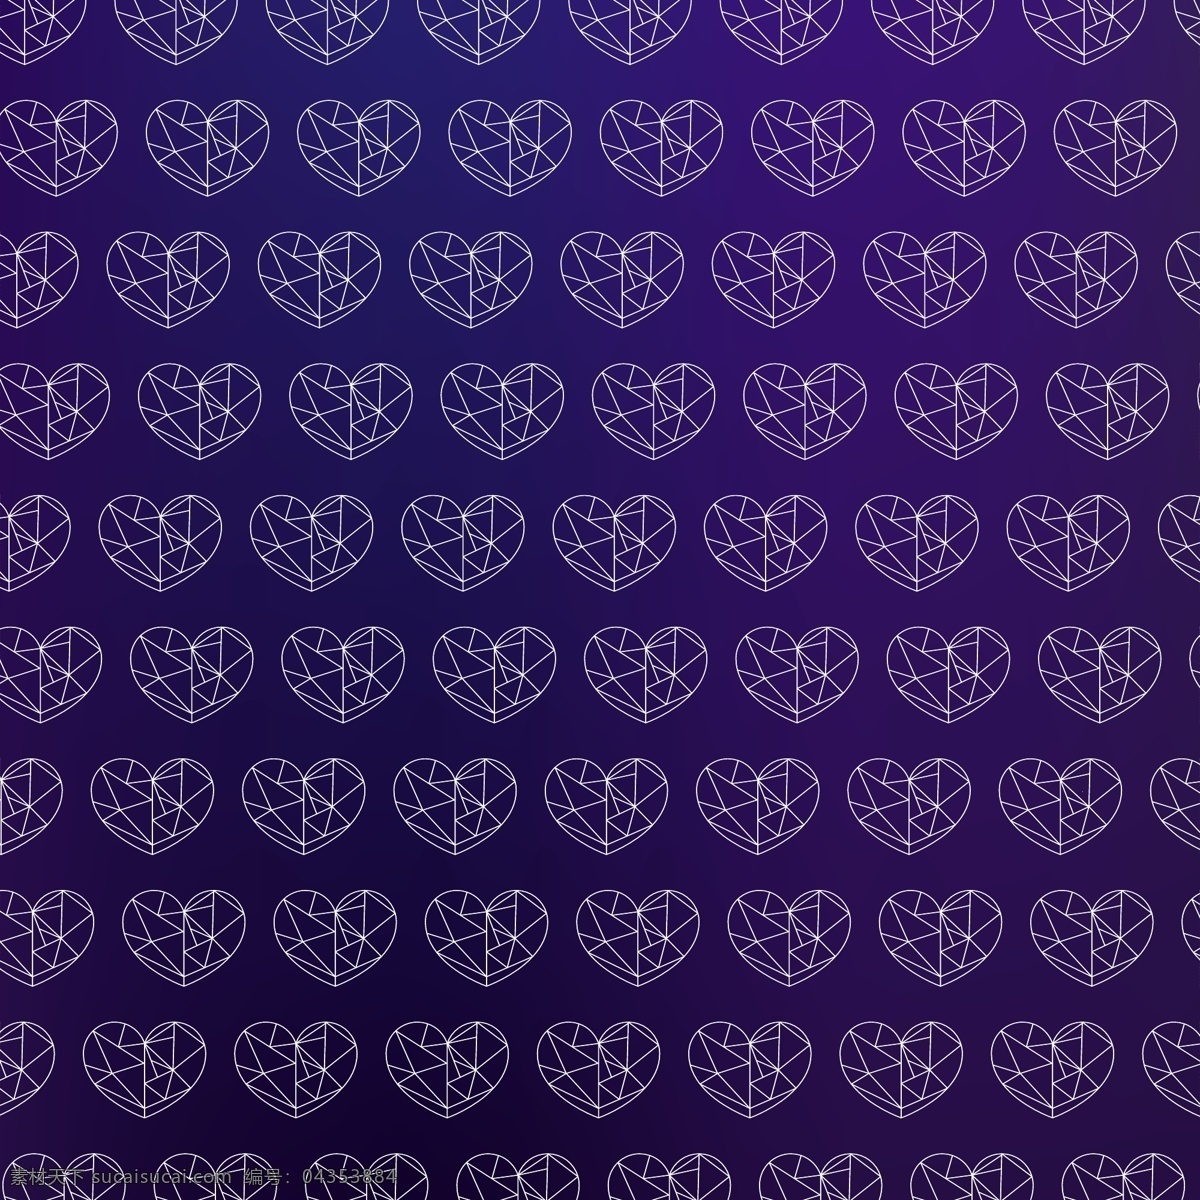 概述 心脏 模式 背景 图案 壁纸 紫色 无缝图案 紫色背景 无缝 图案背景 轮廓 背景设计 心脏背景